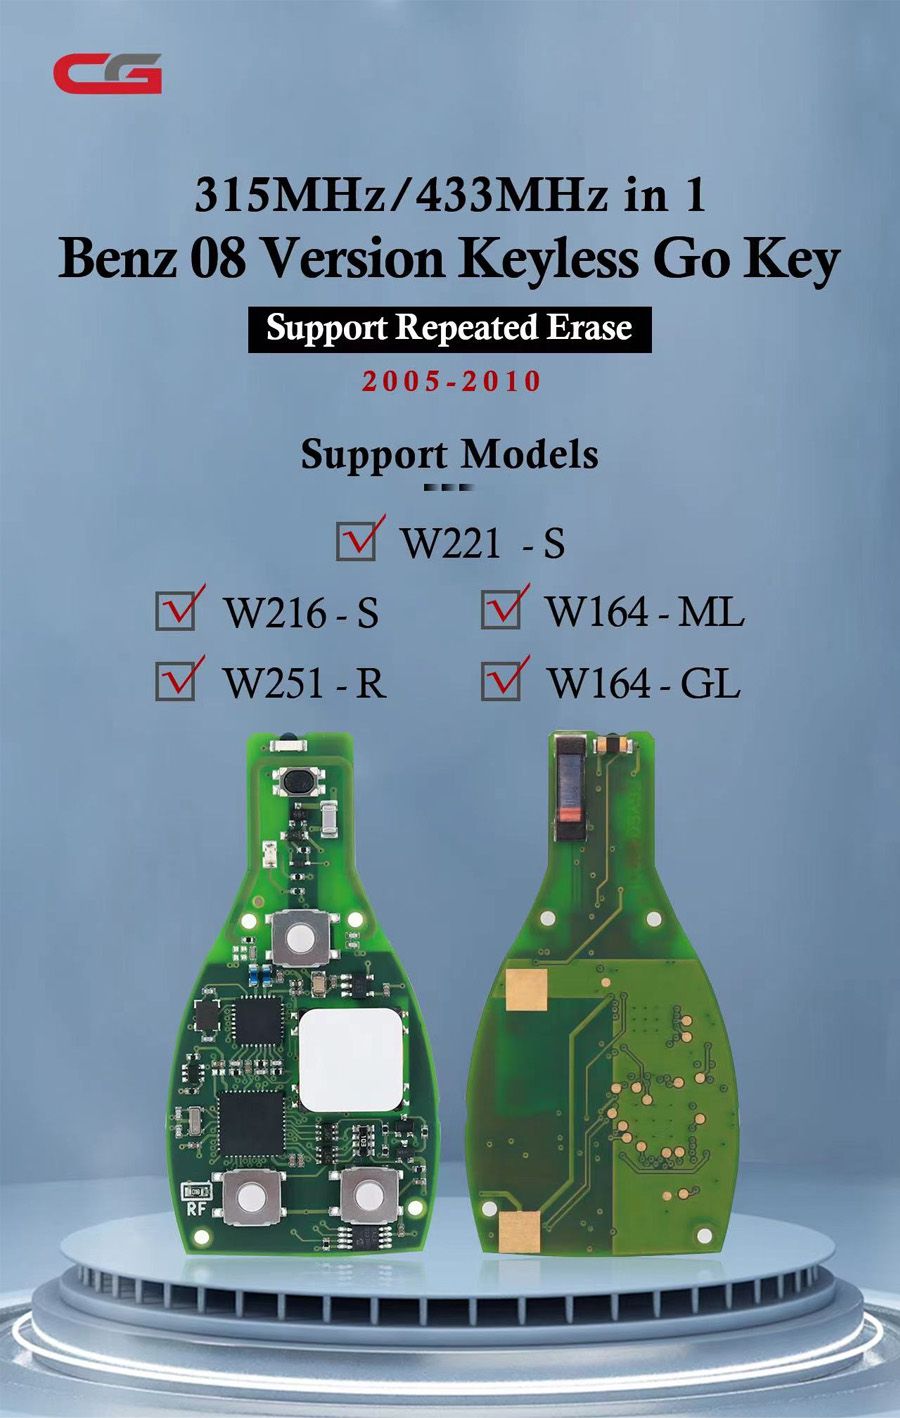 La versión CG Benz 08 sin llave go Key en uno 315 MHz / 433 MHz